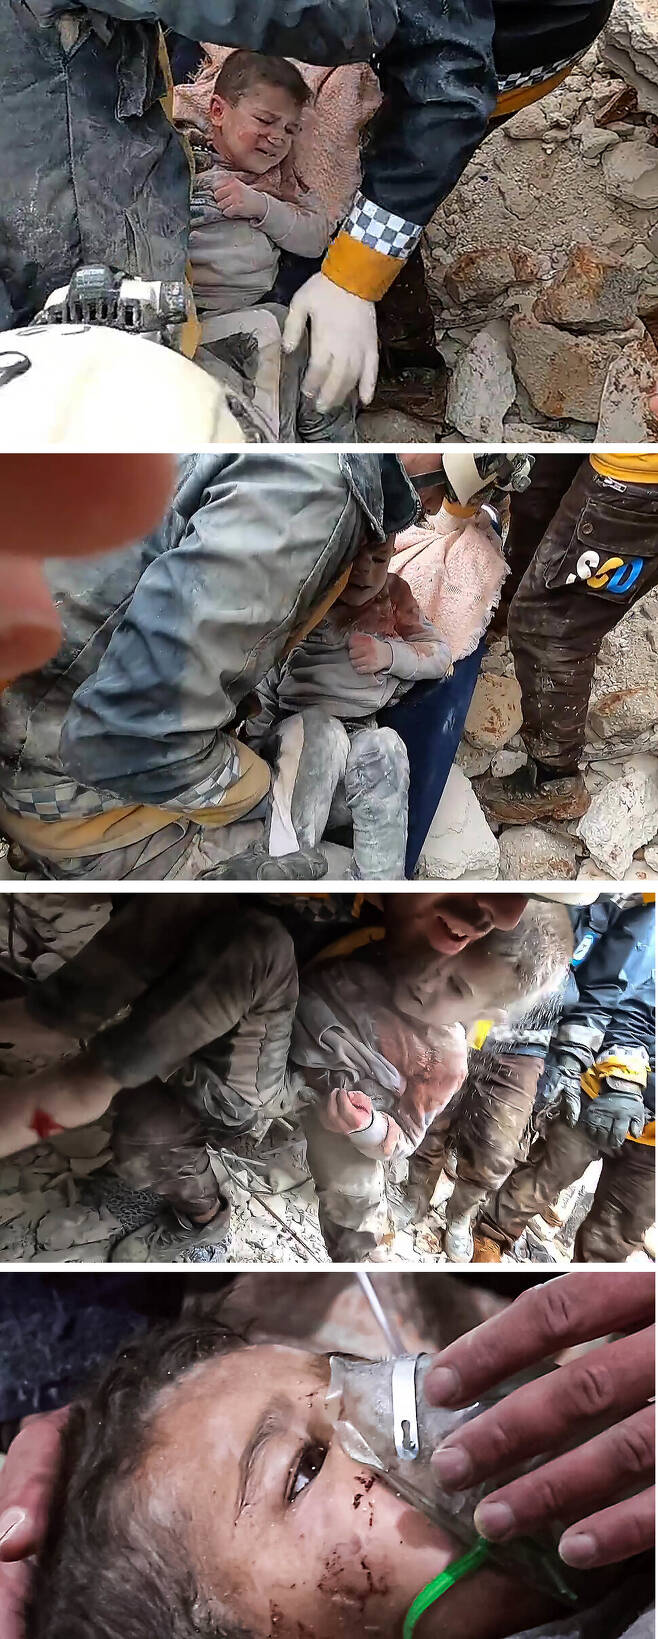 ‘화이트 헬멧’이라는 별명으로 유명한 시리아 민간 구조대인 시리아민간방위대원(SCD)들이 지진이 난 잔해 속에 아이를 구조하는 모습을 이어 붙였다. 이들리브/UPI 연합뉴스